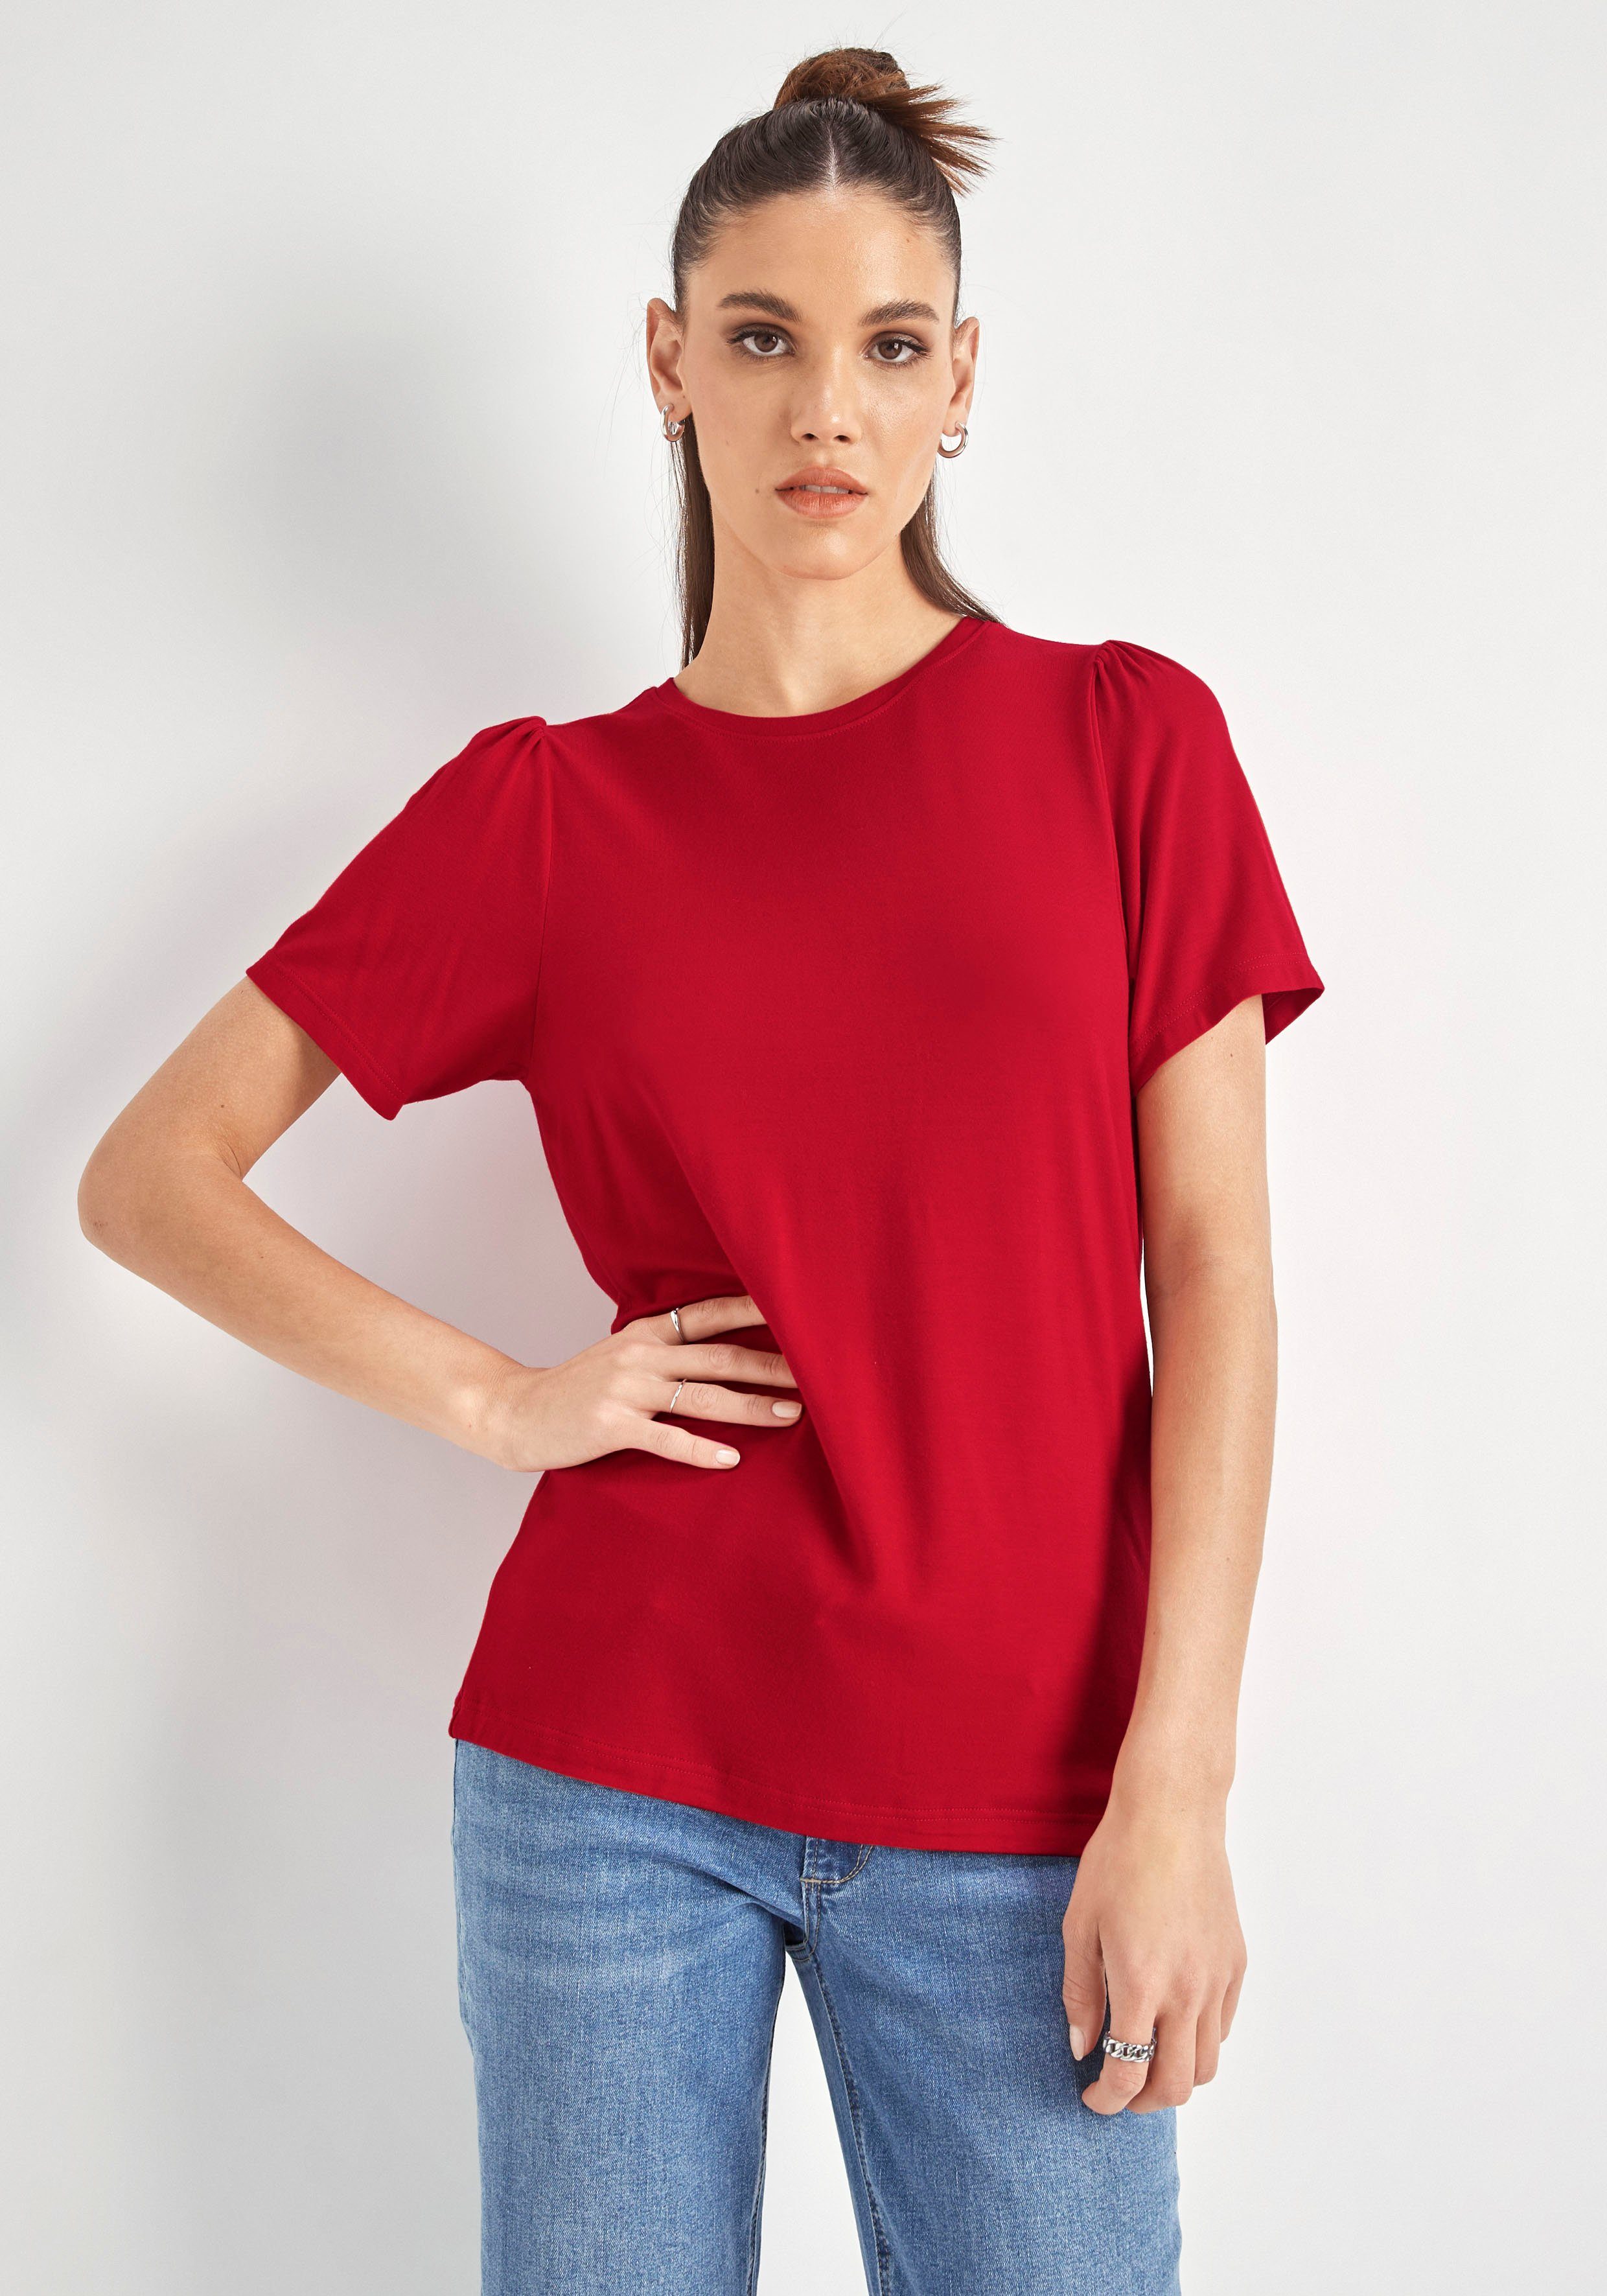 HECHTER PARIS T-Shirt mit Puffschultern rot | T-Shirts